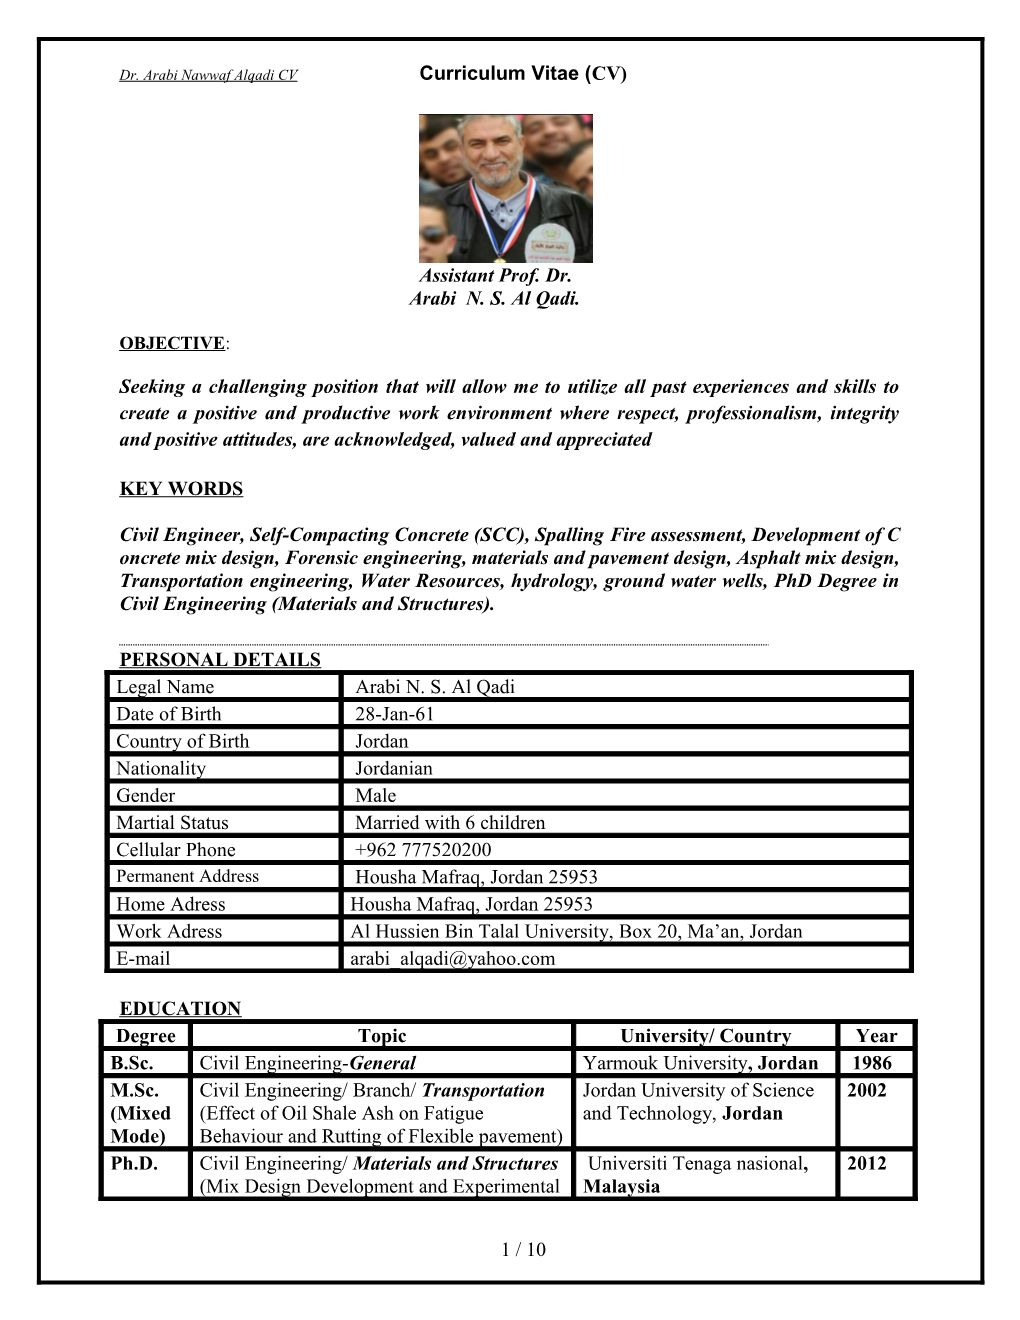 Dr. Arabi Nawwaf Alqadi CV Curriculum Vitae (CV)